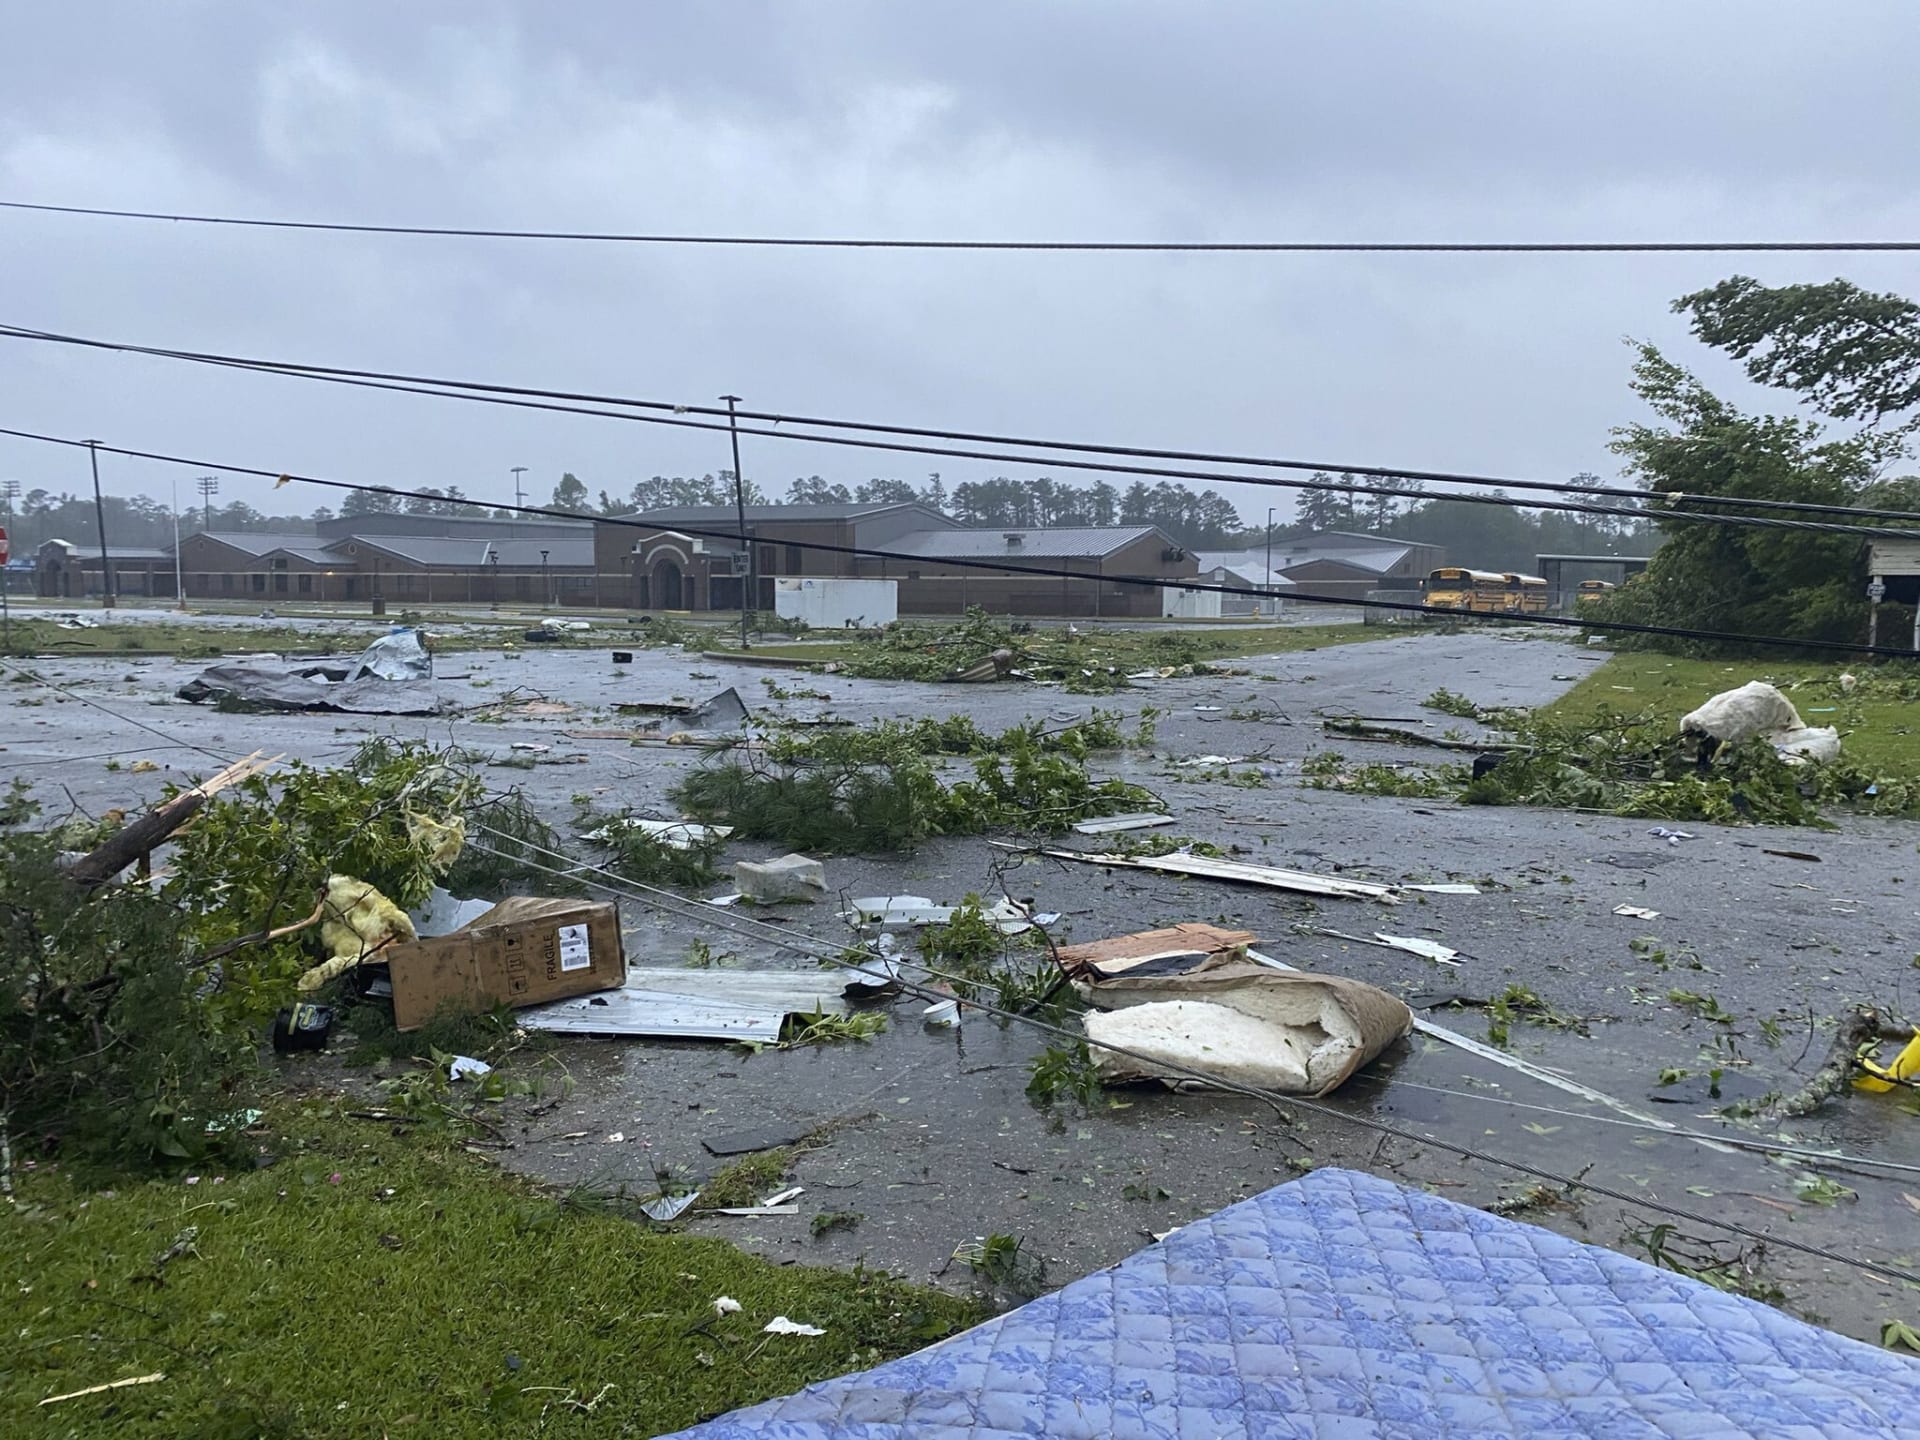 Tropická bouře nejspíš zavinila tragickou nehodu v Alabamě.